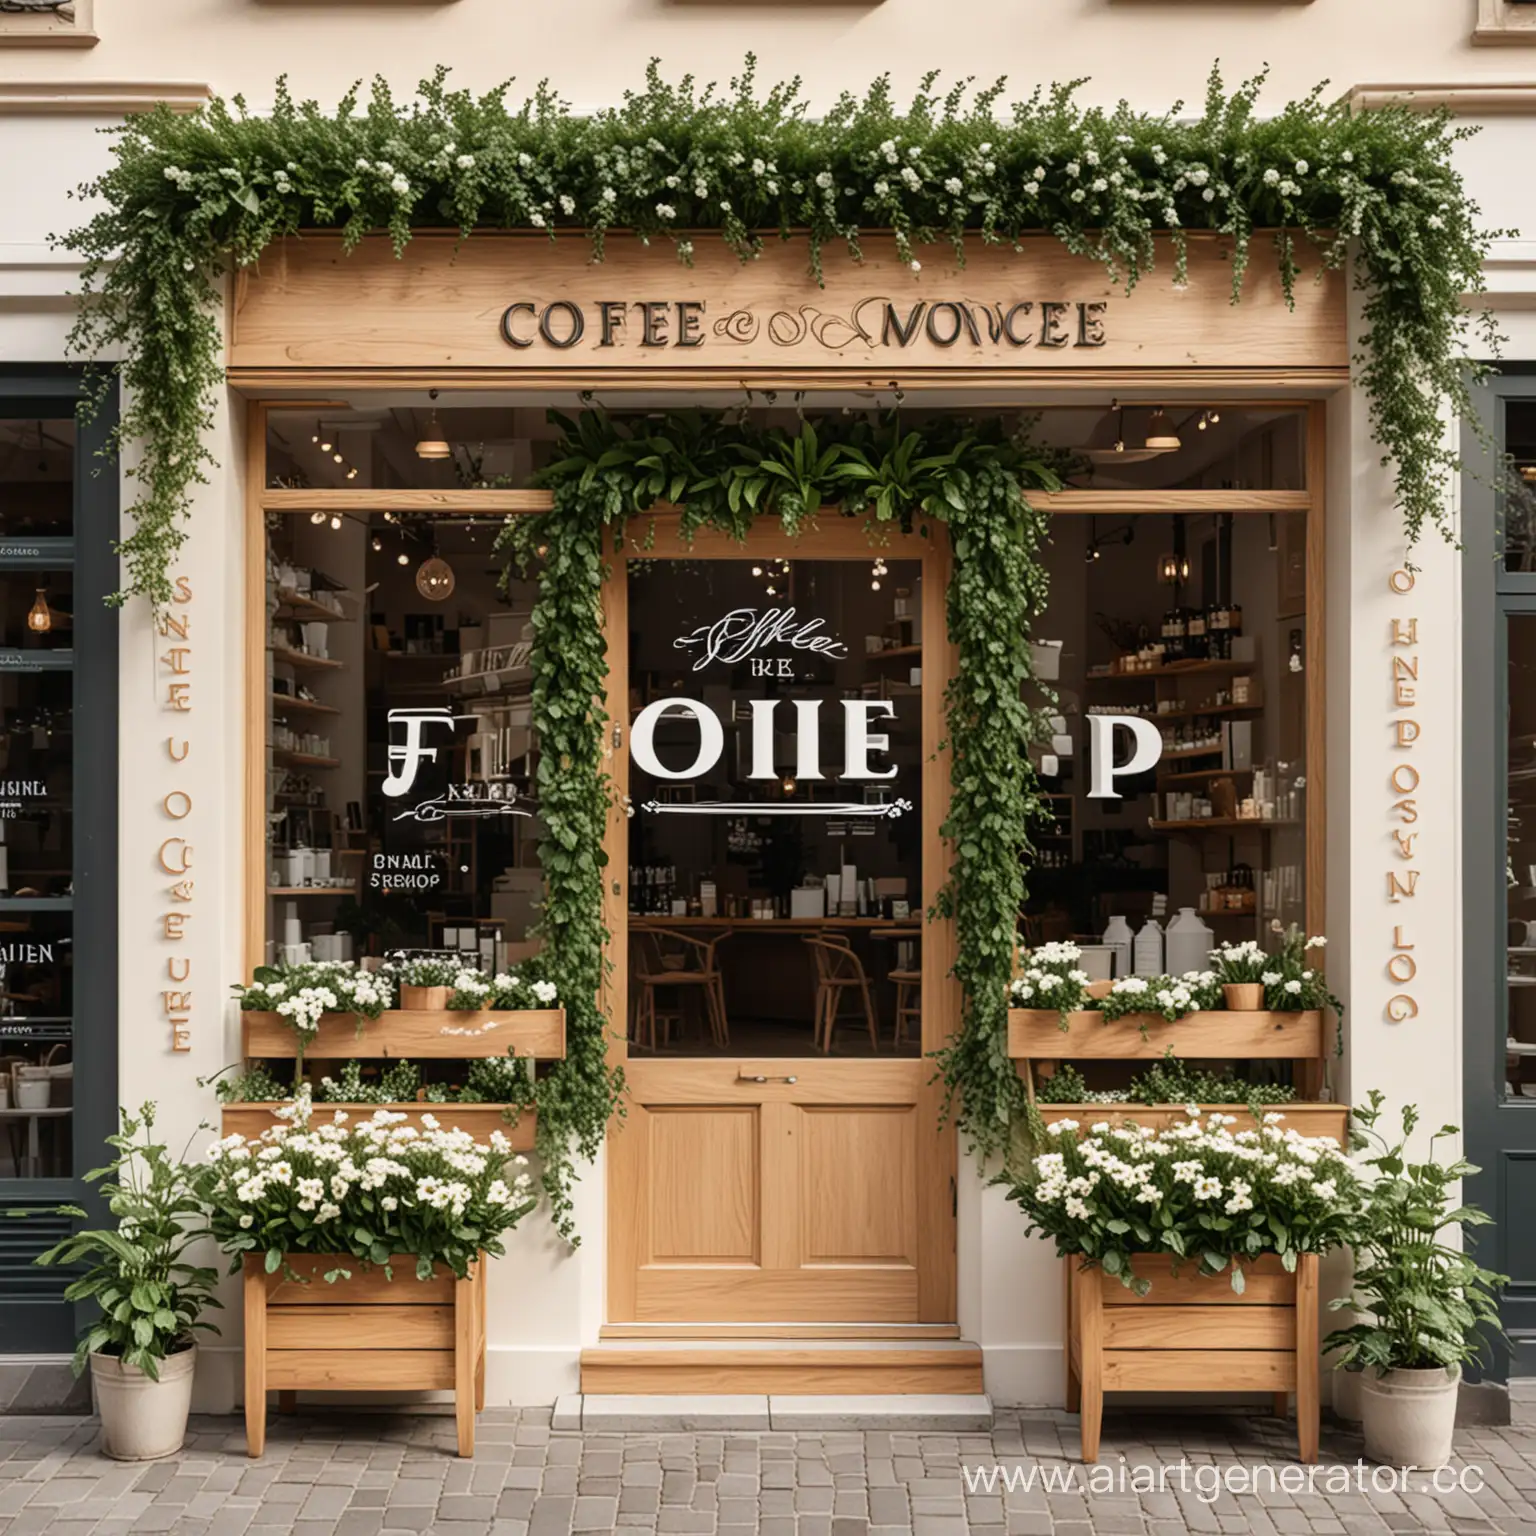 кофейня-цветочная в белых и деревянных тонах с зеленью и цветам  логотип

